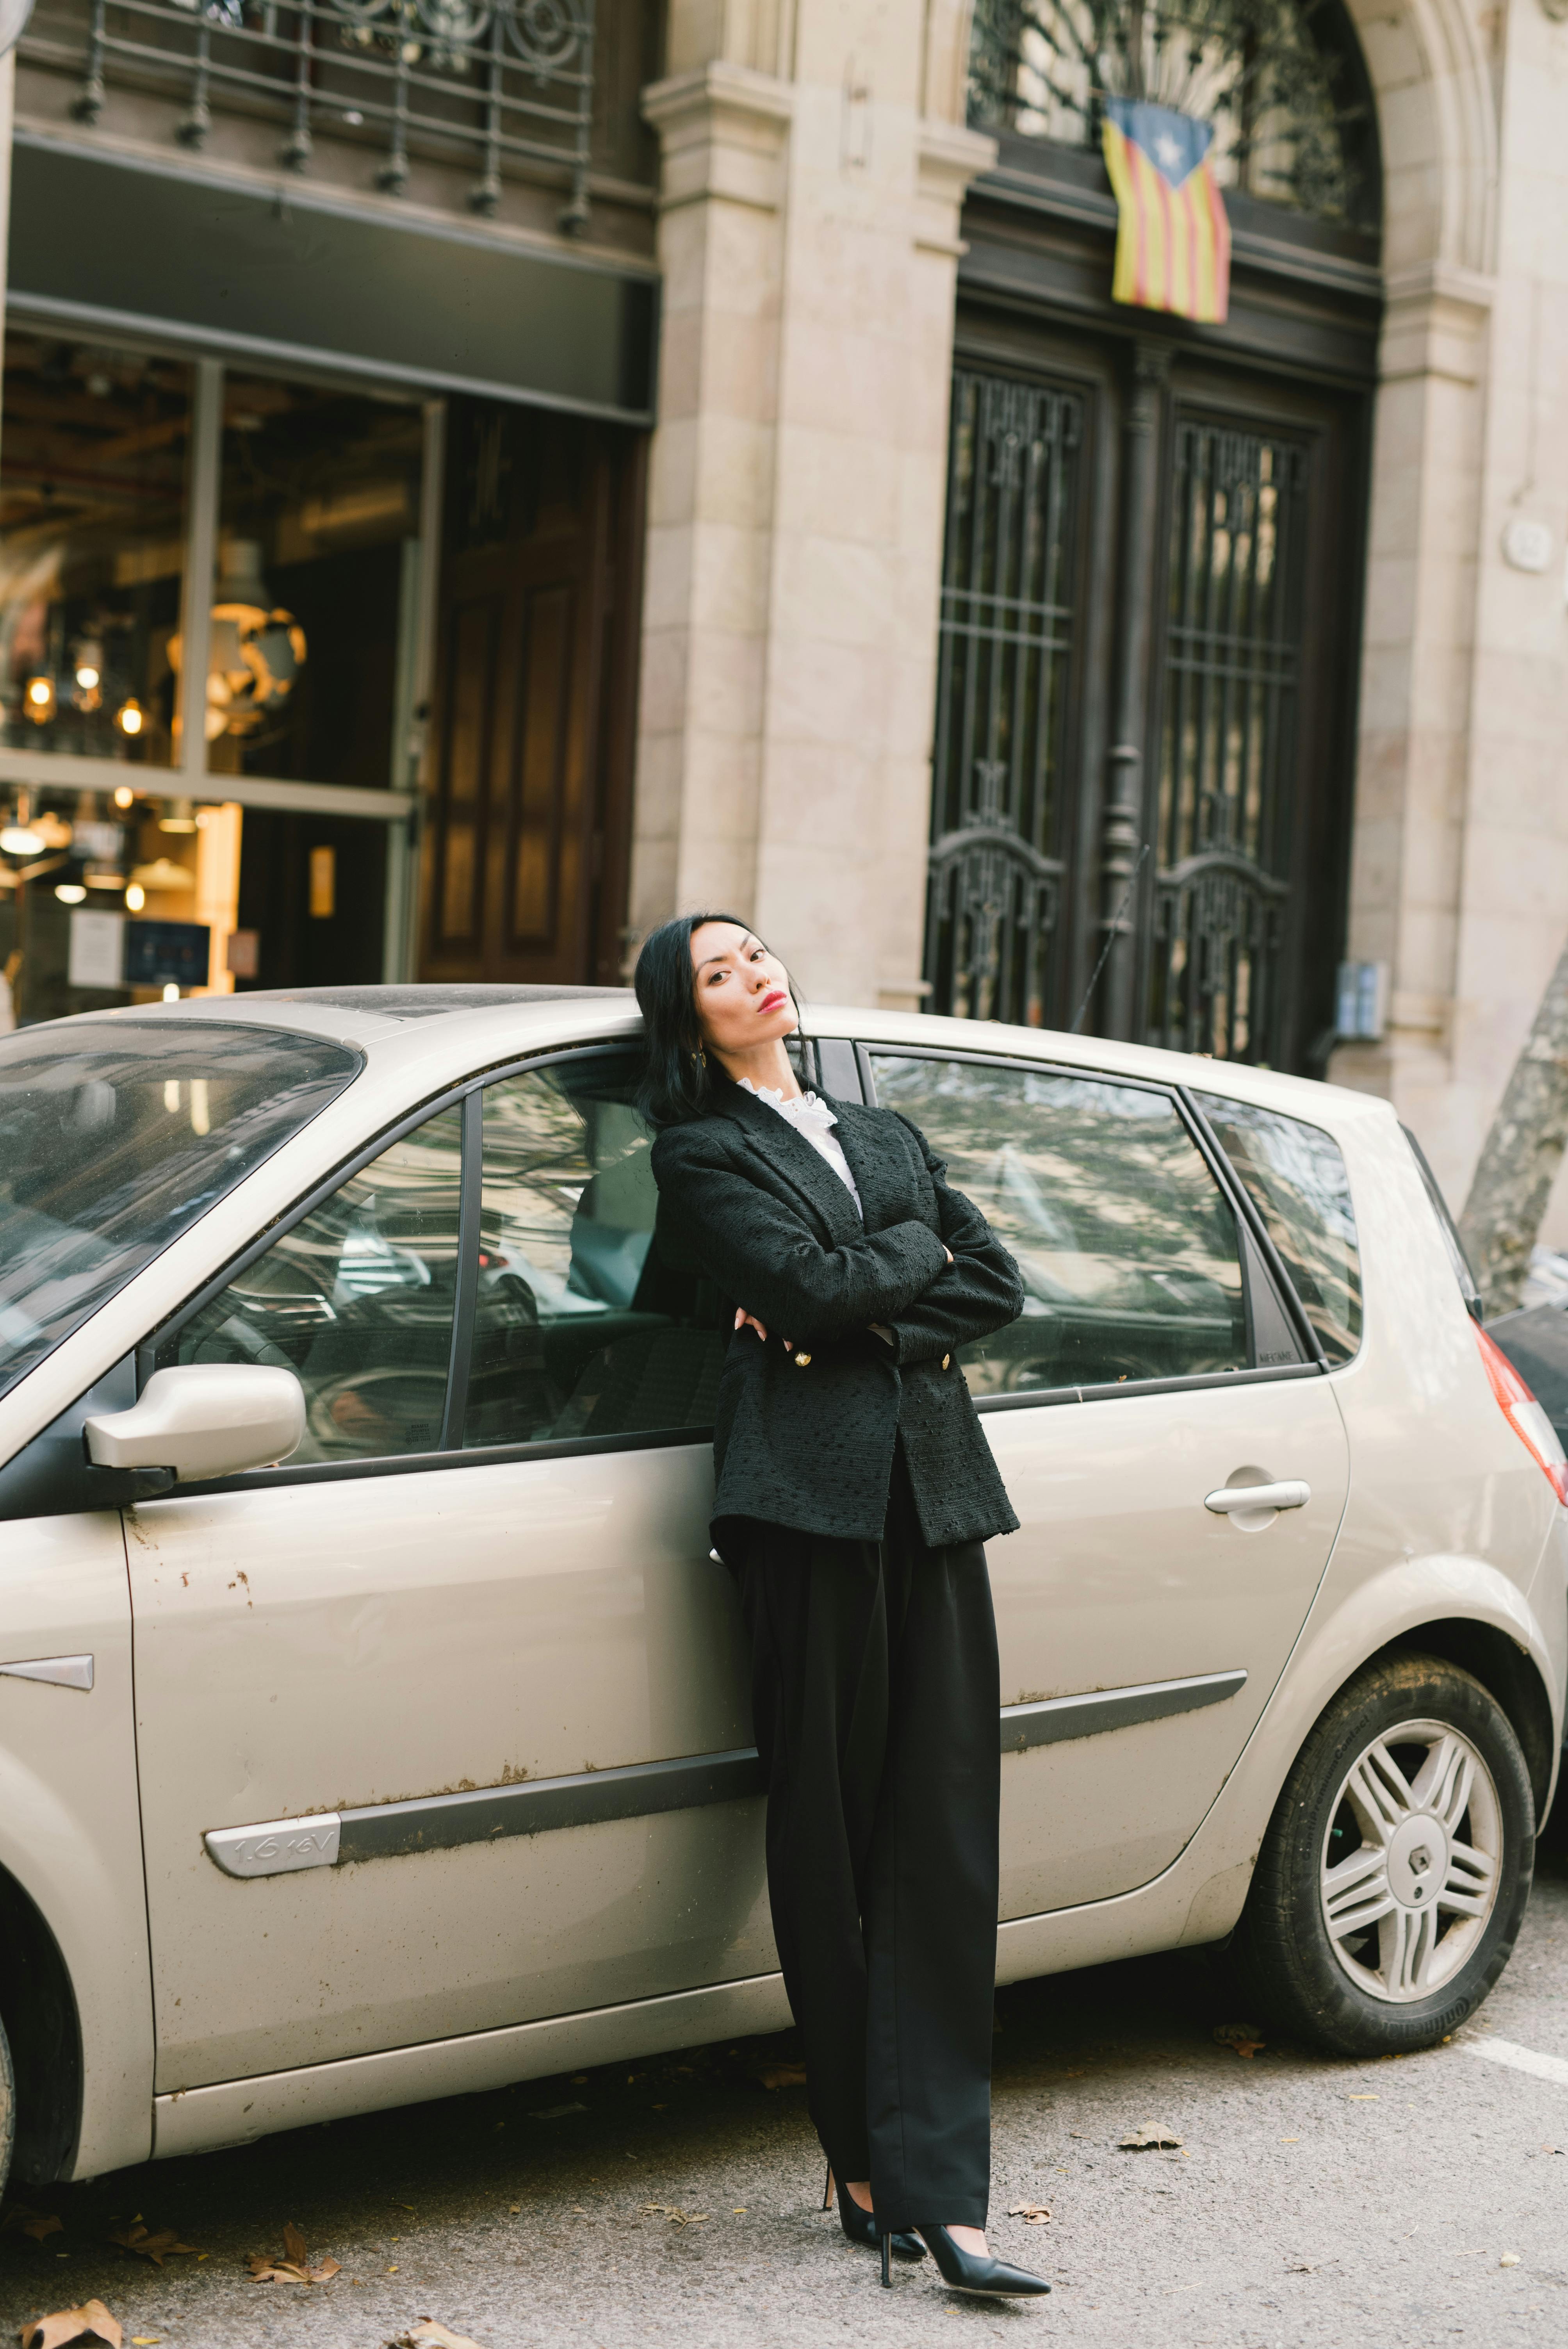 Une femme debout près d'une voiture | Source : Pexels